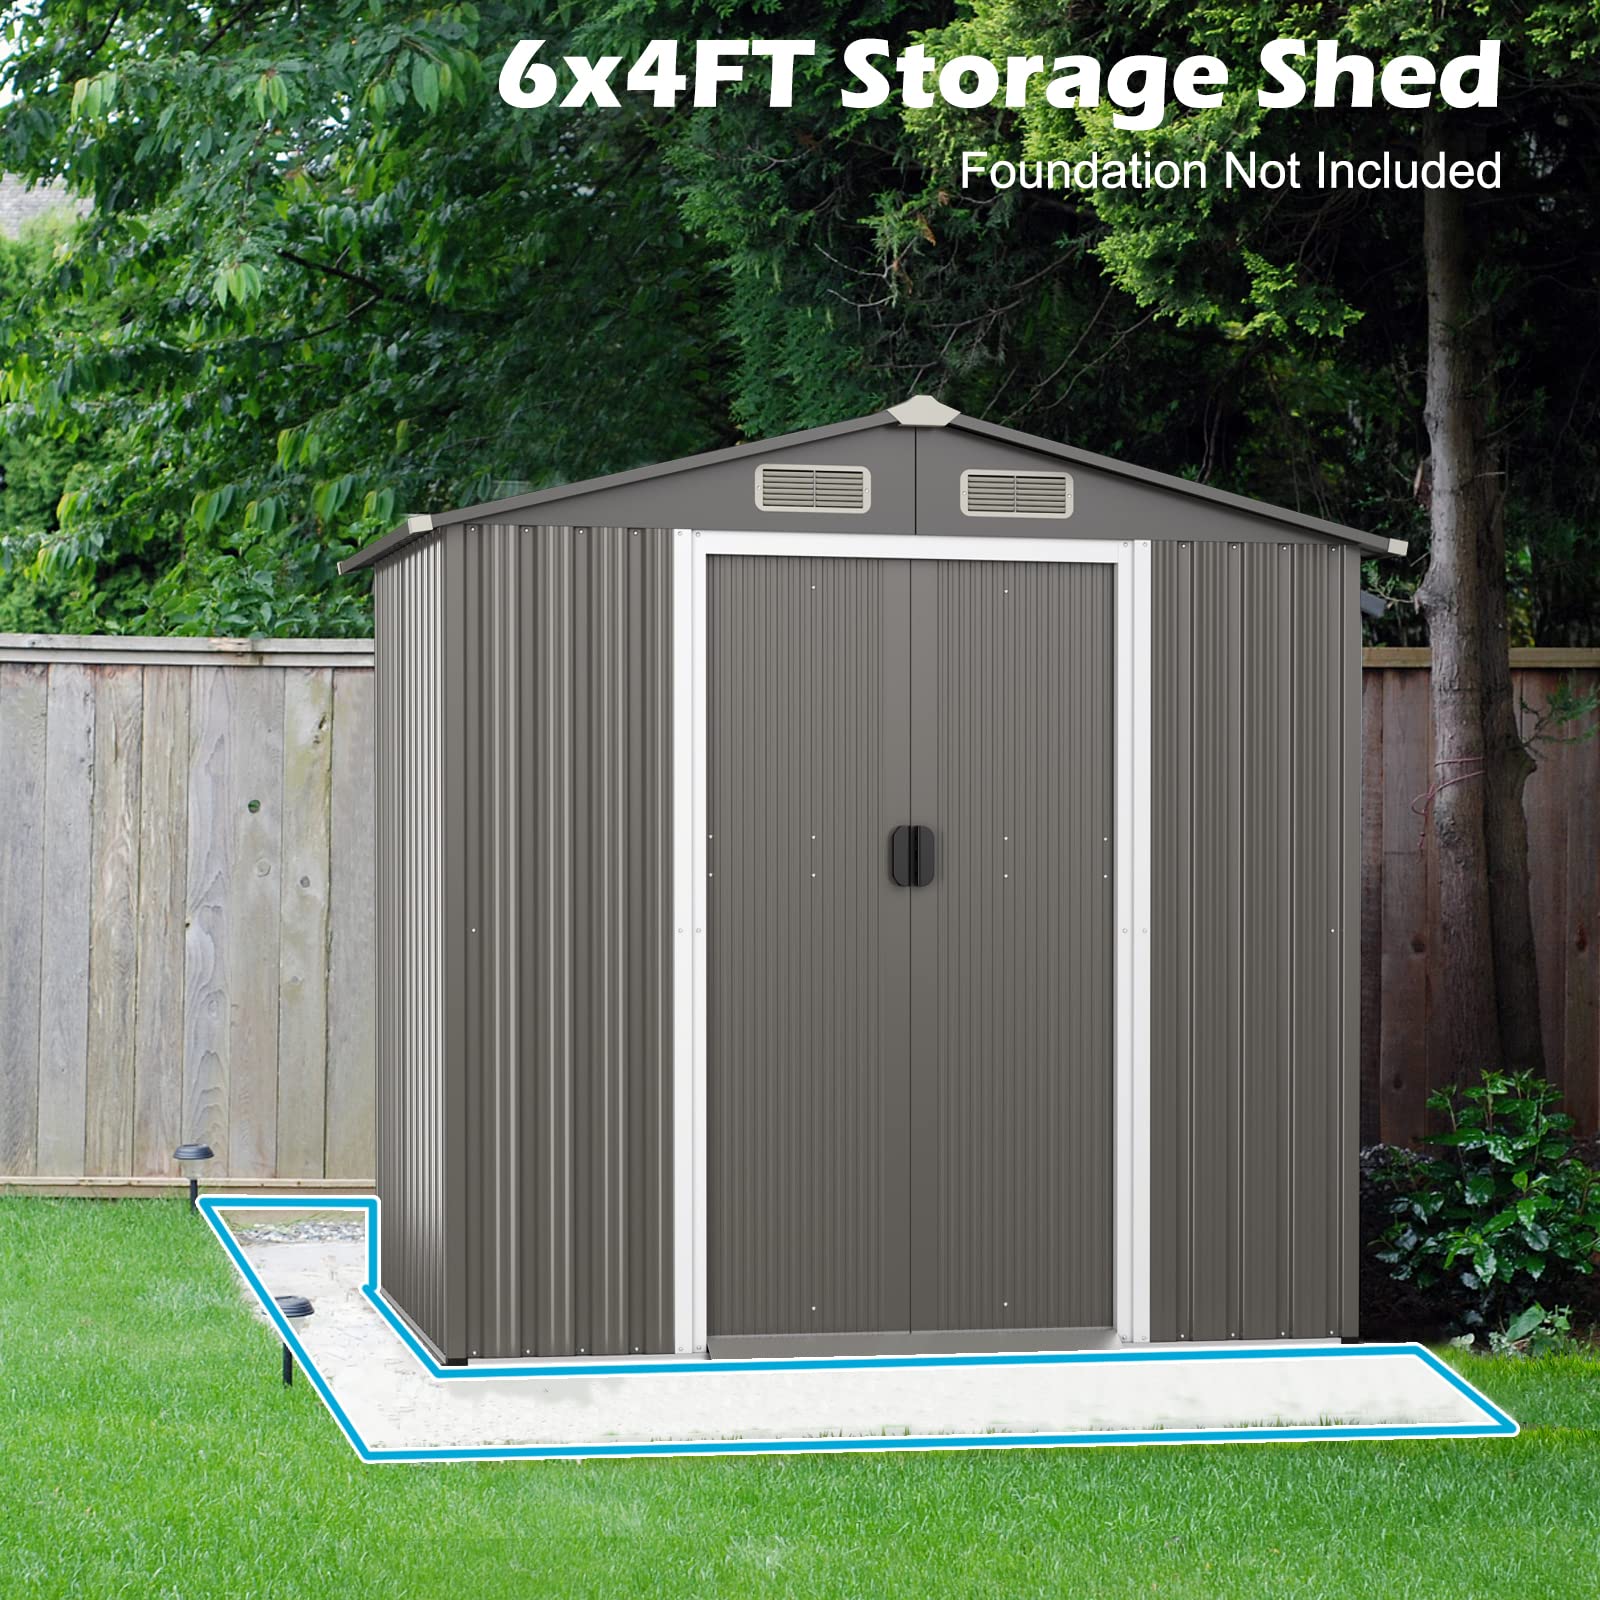 Giantex Outdoor Storage Shed 6 x 4 FT, Double Sliding Door